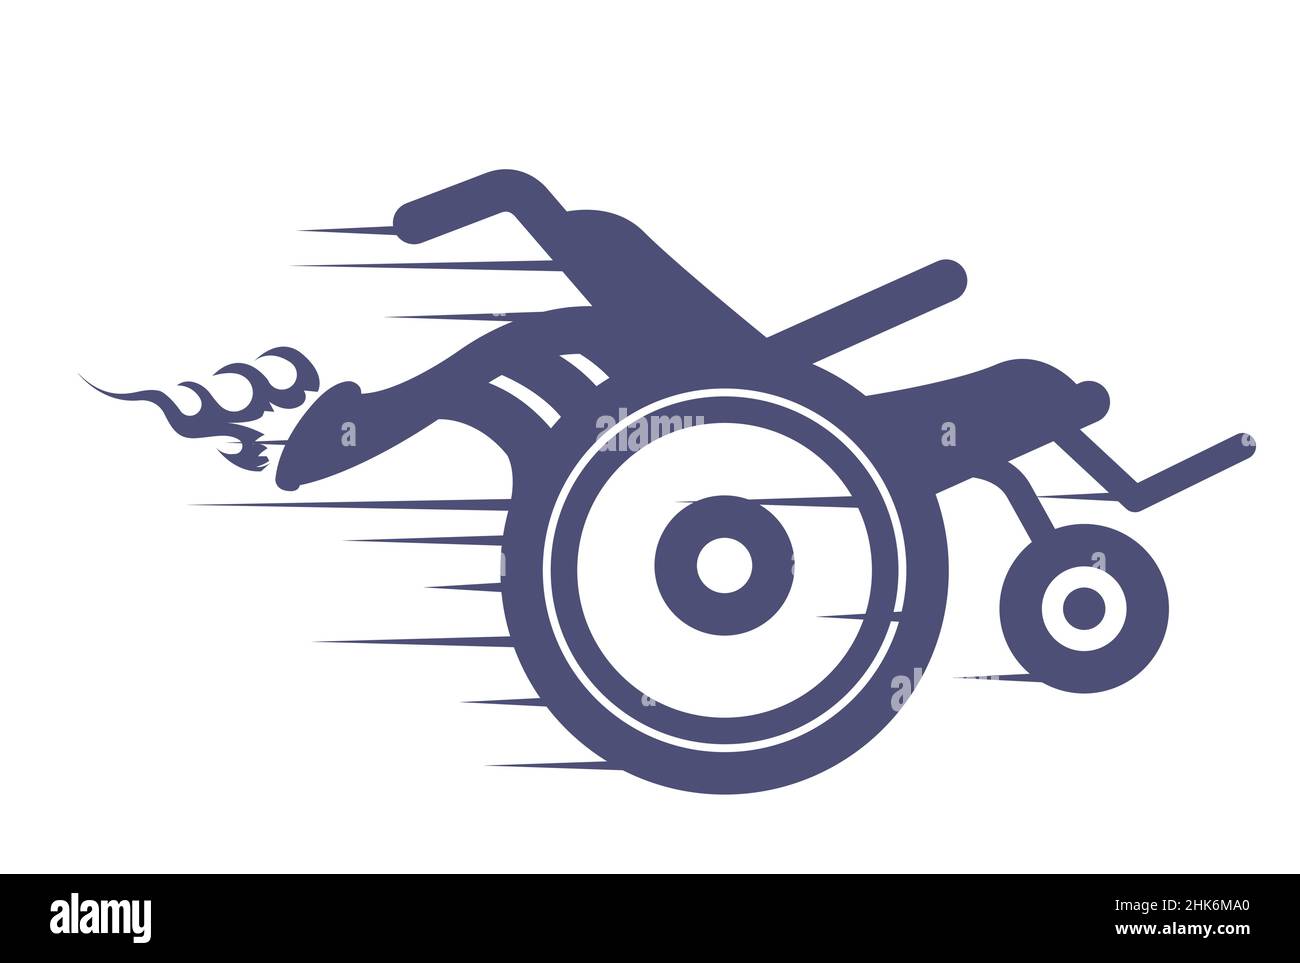 Fauteuil roulant turbo avec tuyau d'échappement tiré, moteur de vitesse avec turbine, icône de fauteuil roulant de course, vecteur Illustration de Vecteur